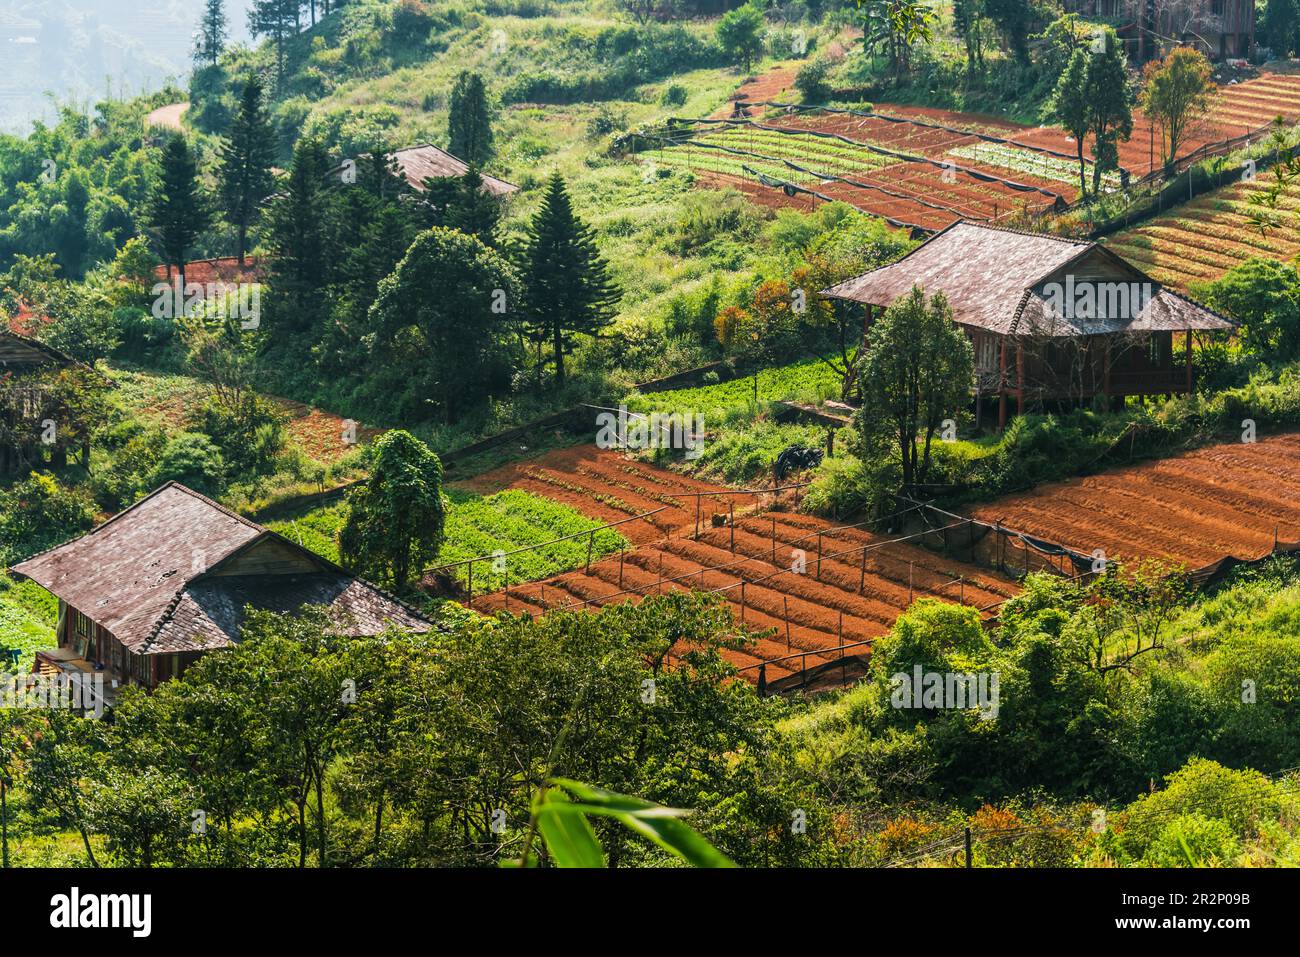 Agricoltura su piccola scala a Sapa nella provincia di Lao Cai nel Vietnam del nord-ovest Foto Stock